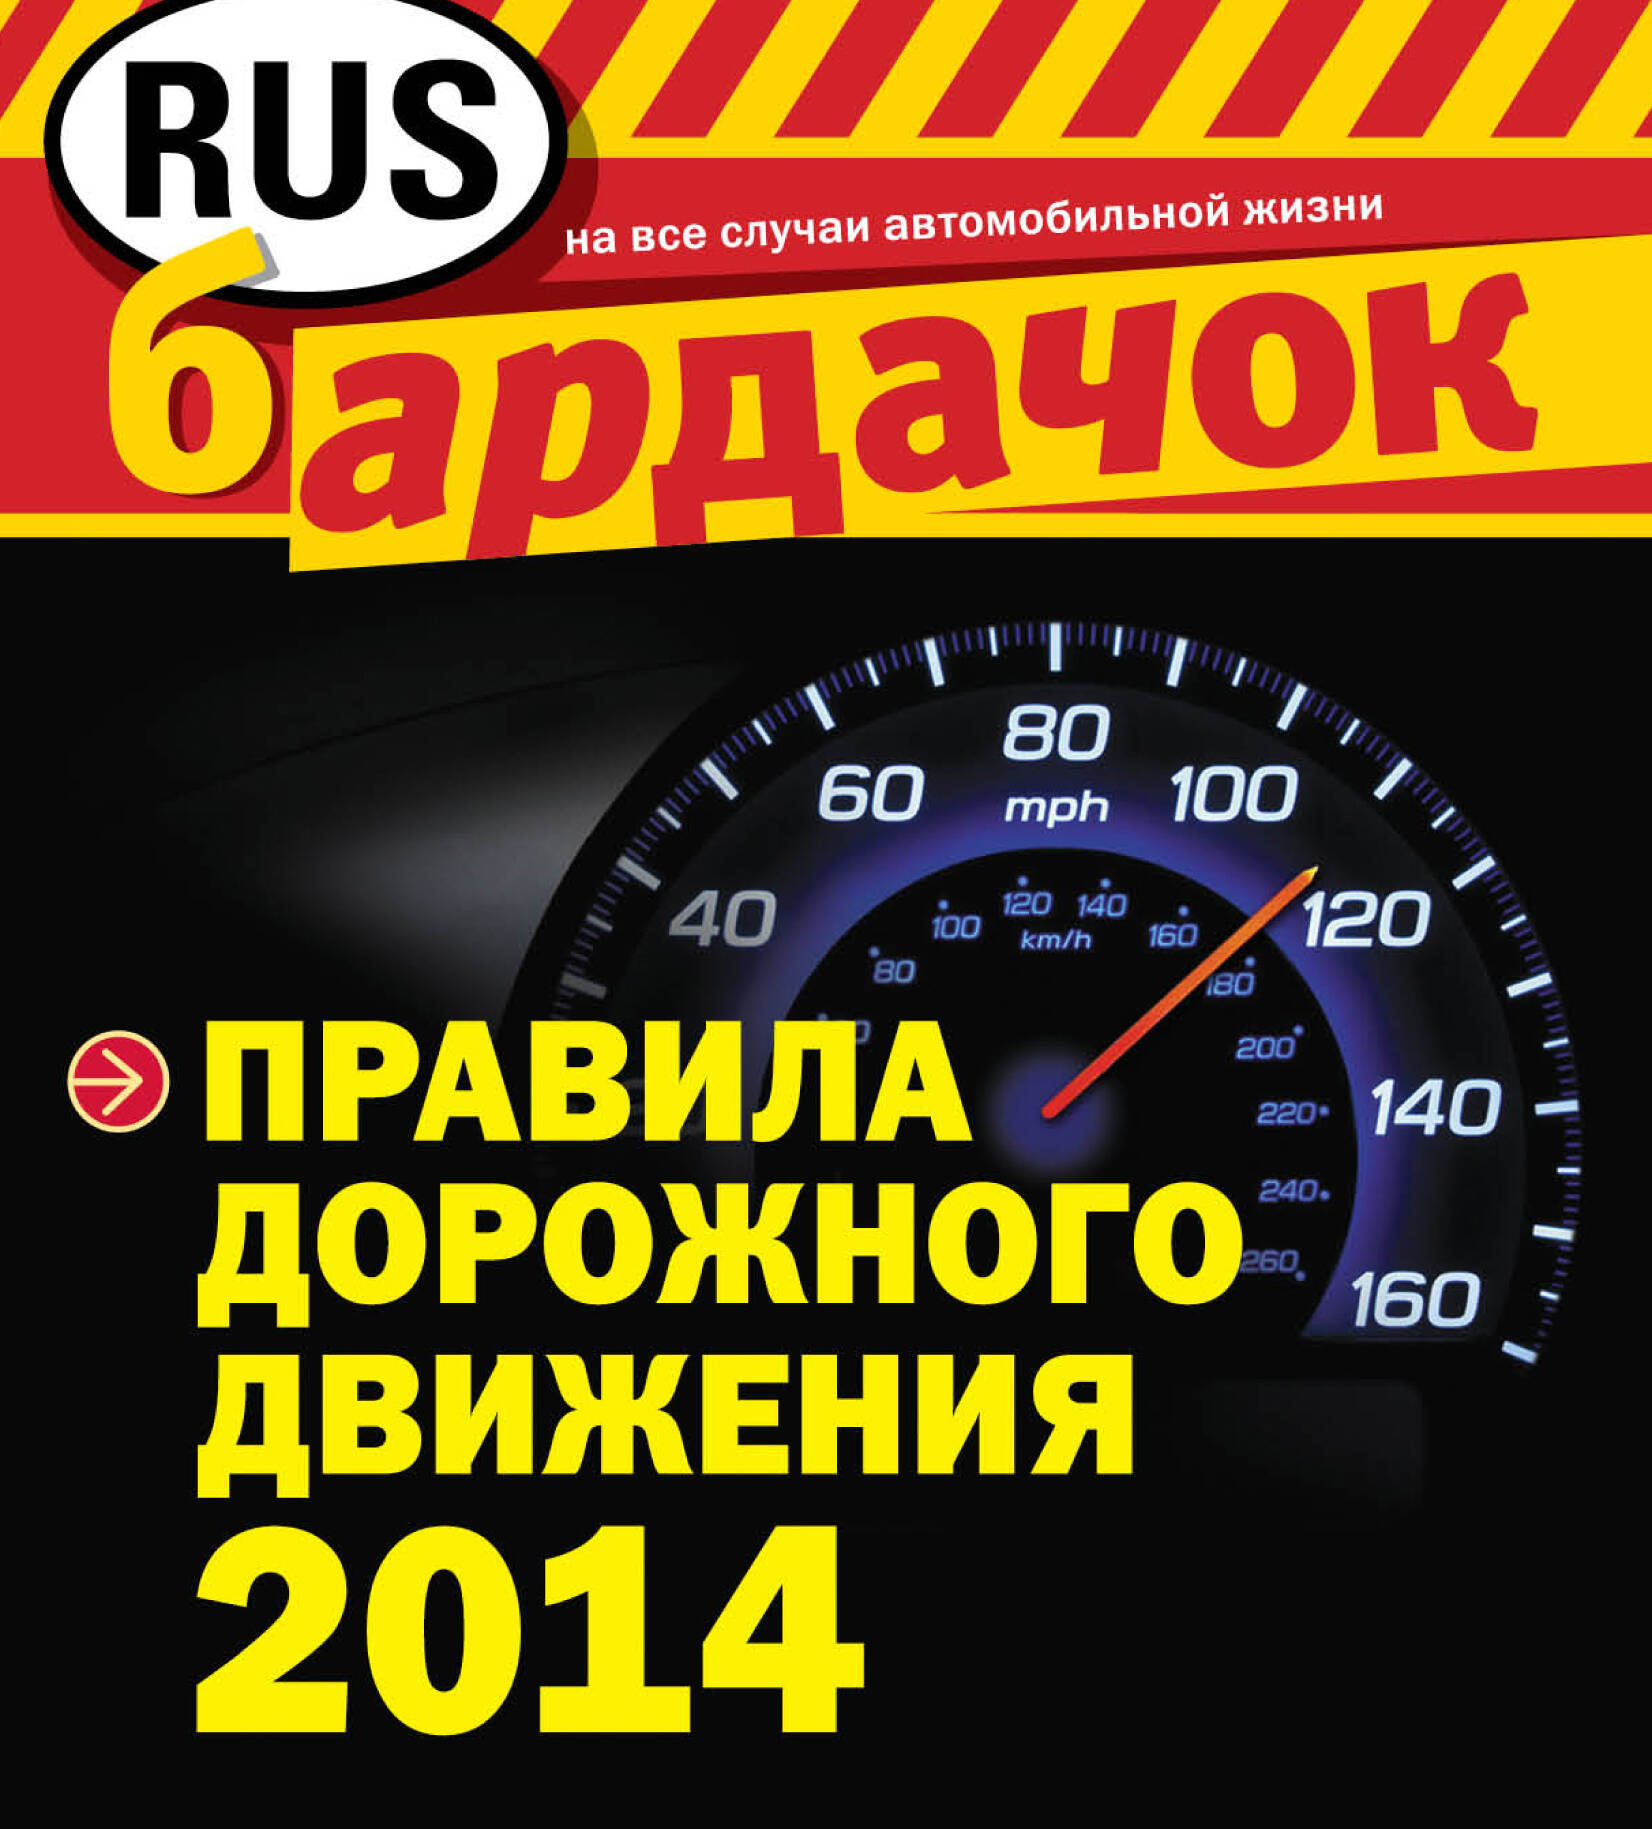 Правила дорожного движения с изм. на 2014 год (квадратный формат)